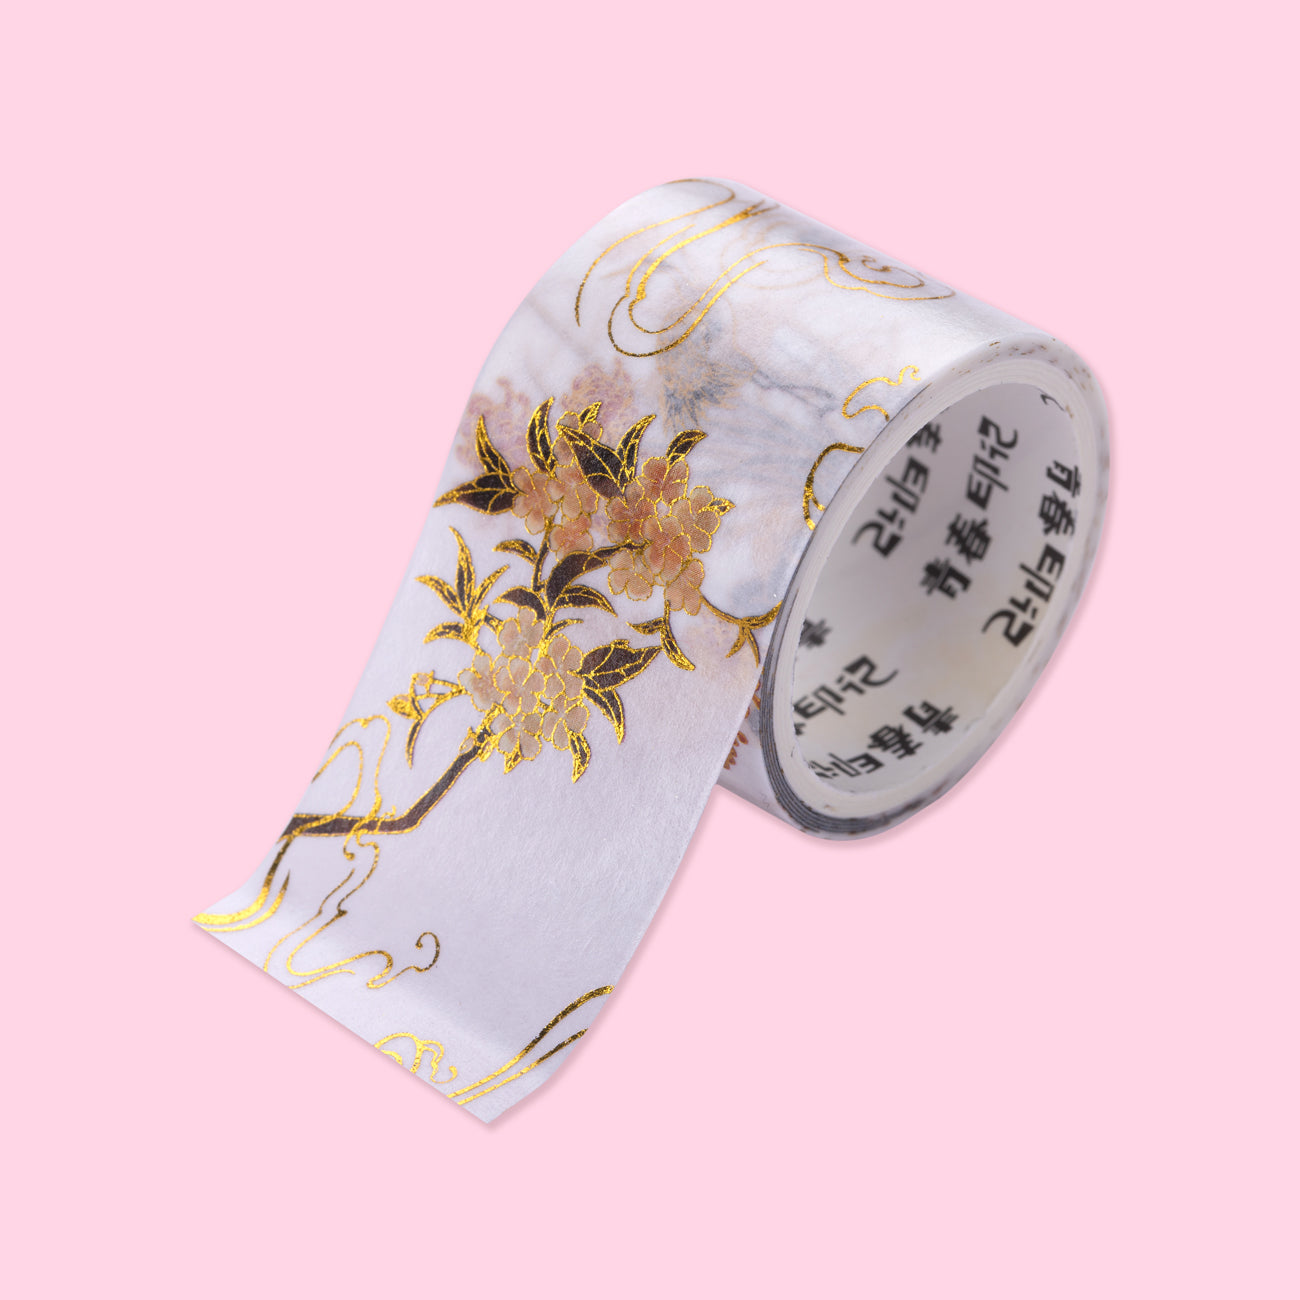 SANWOOD Washi Tape,10 Rolls Washi Tape Set Black Gold Foil Floral  Decorative Masking Paper Sticker for Craft Scrapbook Journal DIY Gift